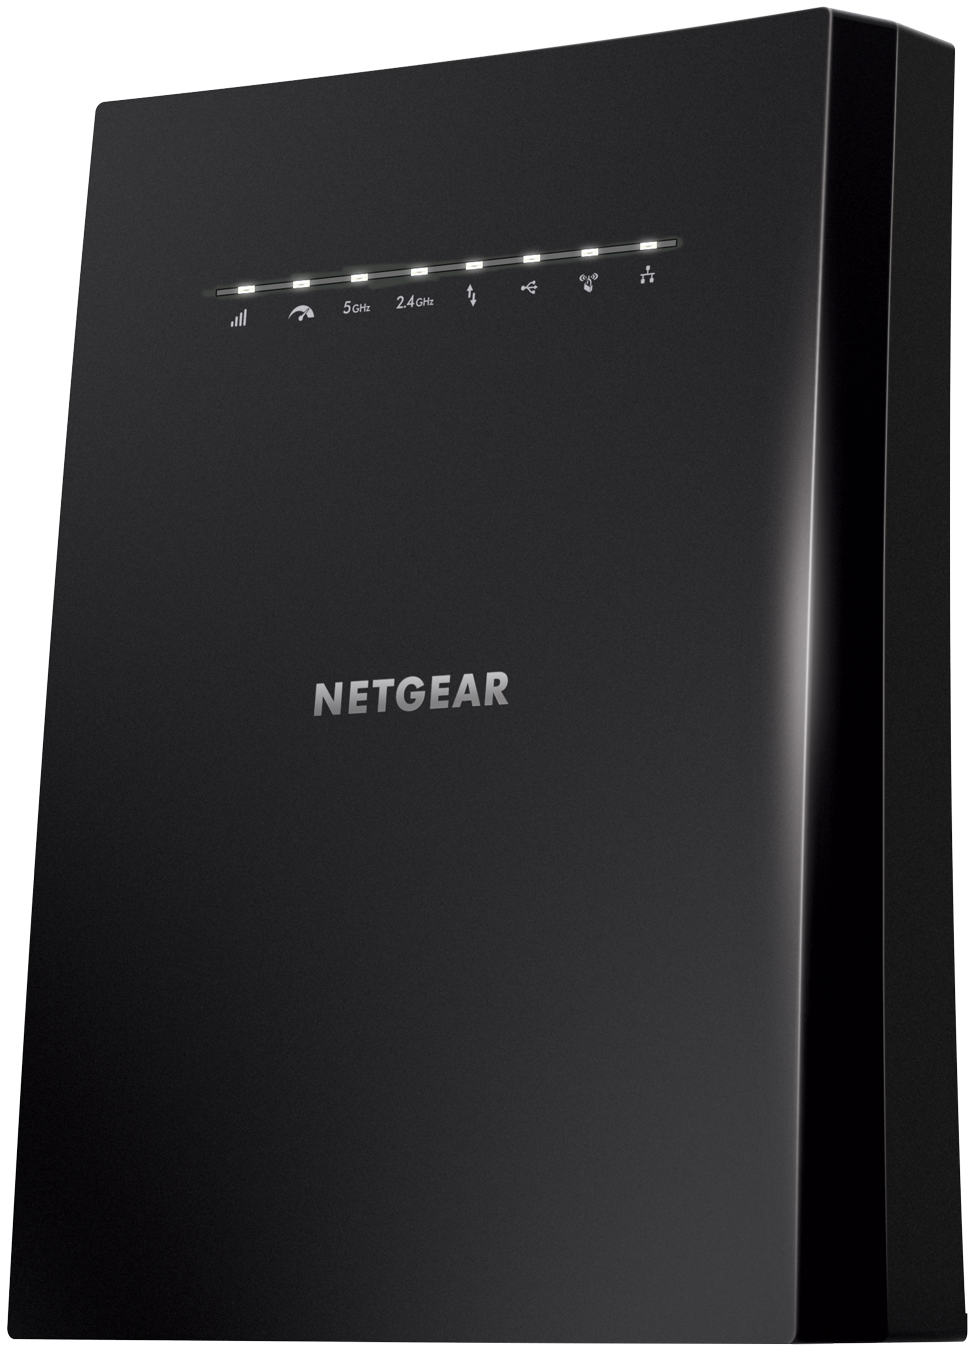 NETGEAR, Inc. - NETGEAR Introduces Nighthawk X6S Tri-band WiFi